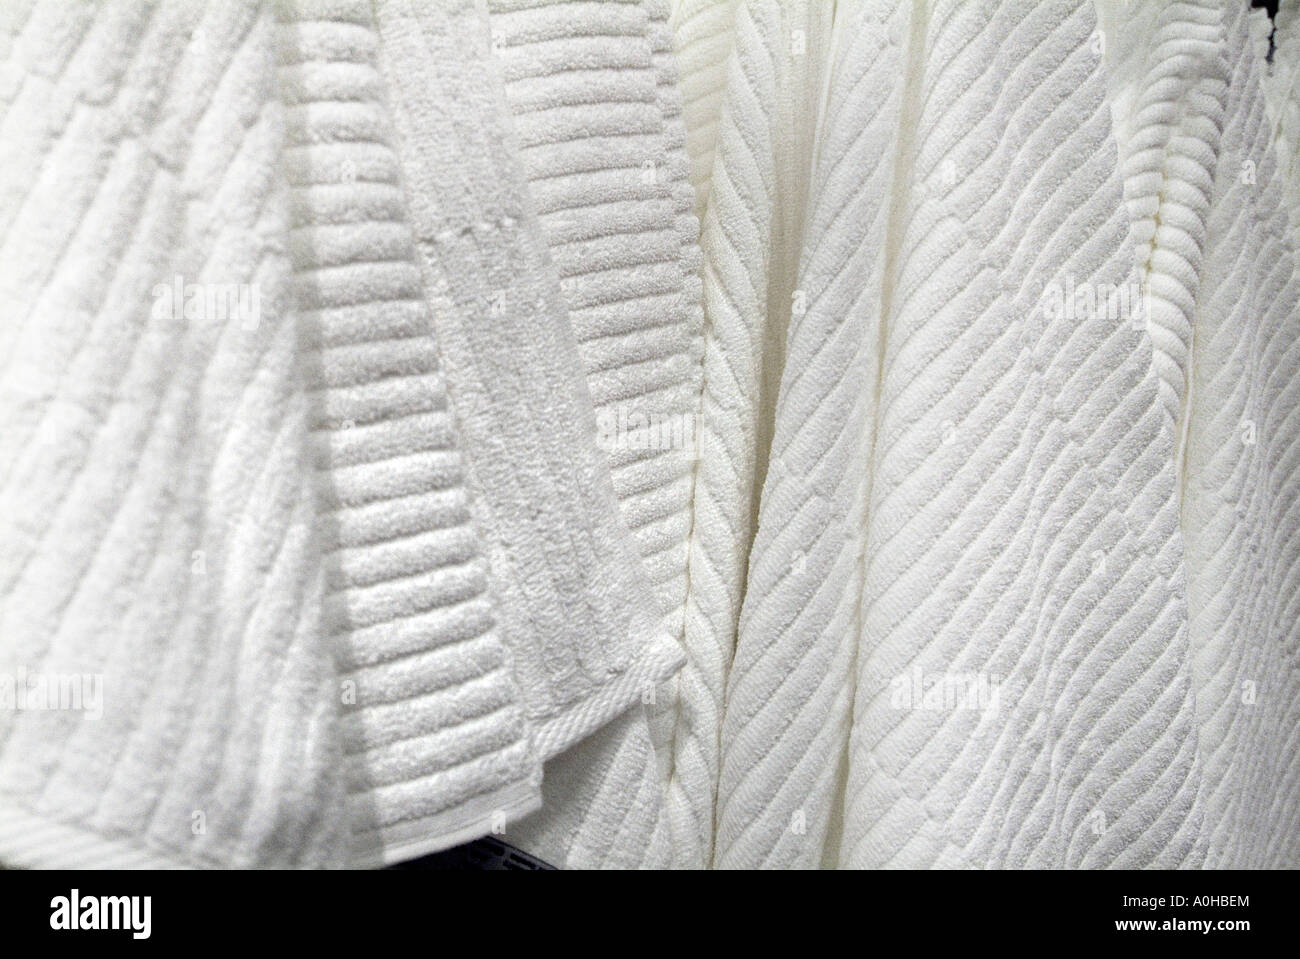 Weiße Baumwolle Leinen Handtuch Ribed Textur hängen hängen anzeigen innen innen innen ohne Gegentor Bad Gesicht Terry Flachsfasern natura Stockfoto